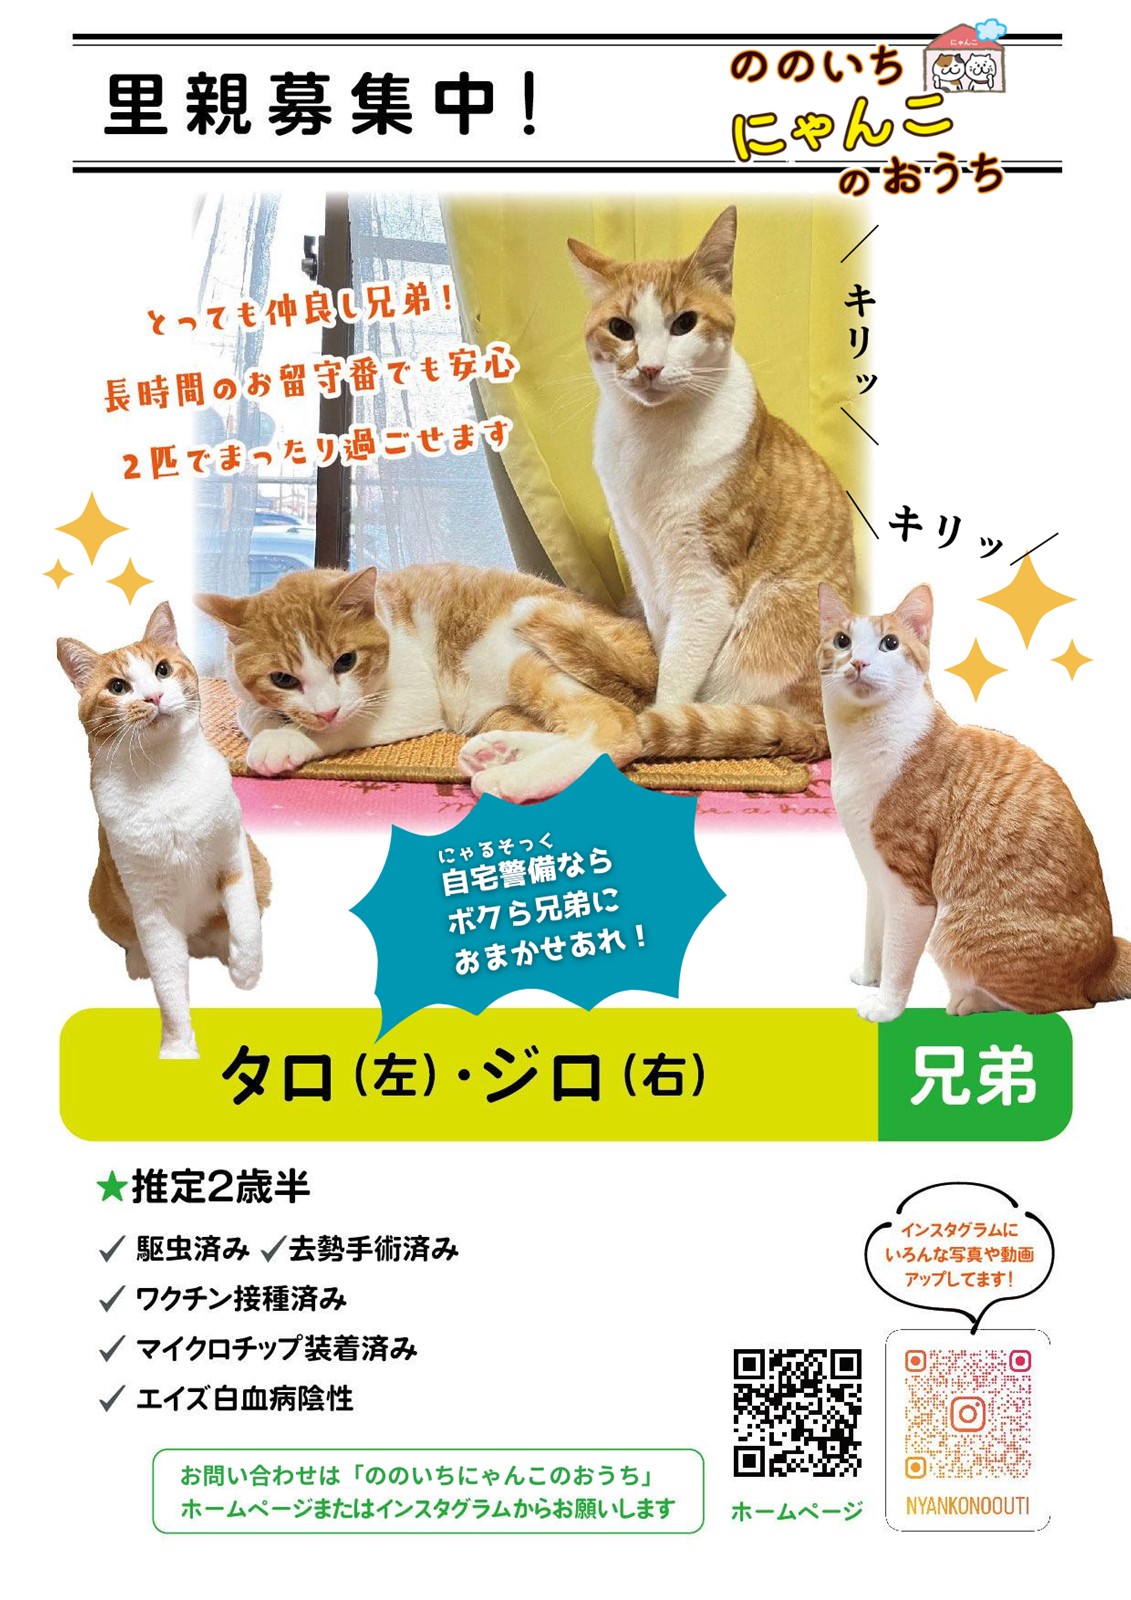 ののいちにゃんこのおうち様より　里親募集中の保護猫「タロくん」「ジロくん」のご紹介　石川県野々市市